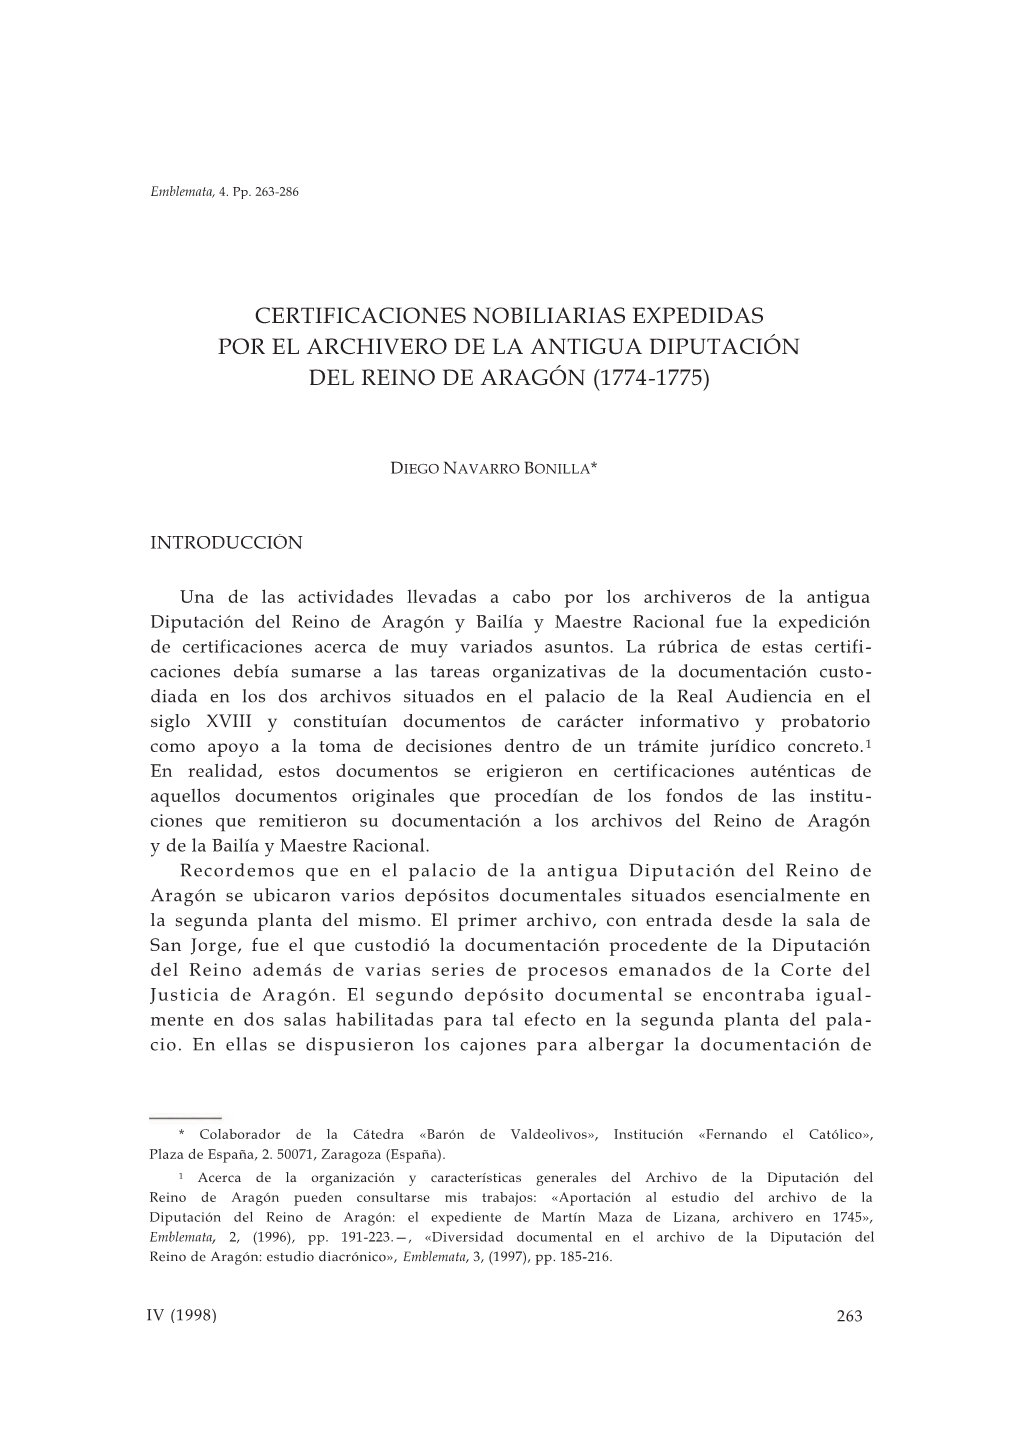 Certificaciones Nobiliarias Expedidas Por El Archivero De La Antigua Diputación Del Reino De Aragón (1774-1775)